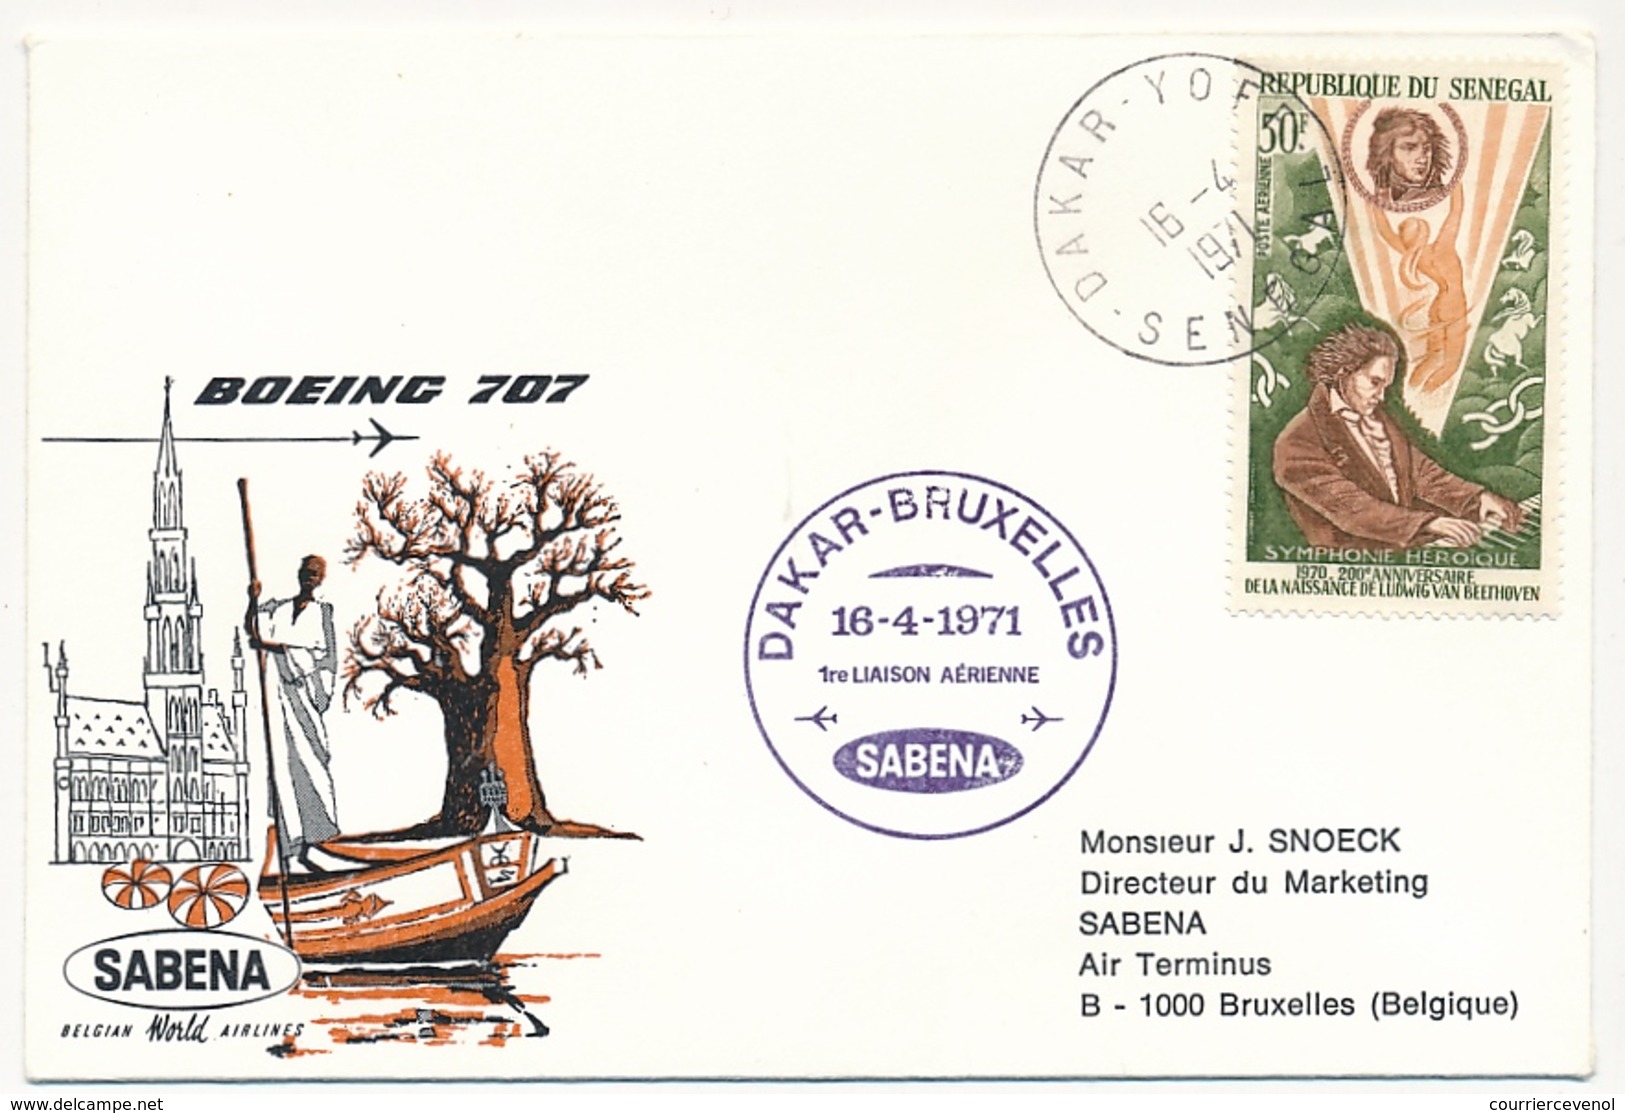 BELGIQUE - 2 Enveloppes SABENA - 1ere Liaison Aérienne - DAKAR - BRUXELLES 16/4/1971 Et Aller 13/4/1971 - Sénégal (1960-...)